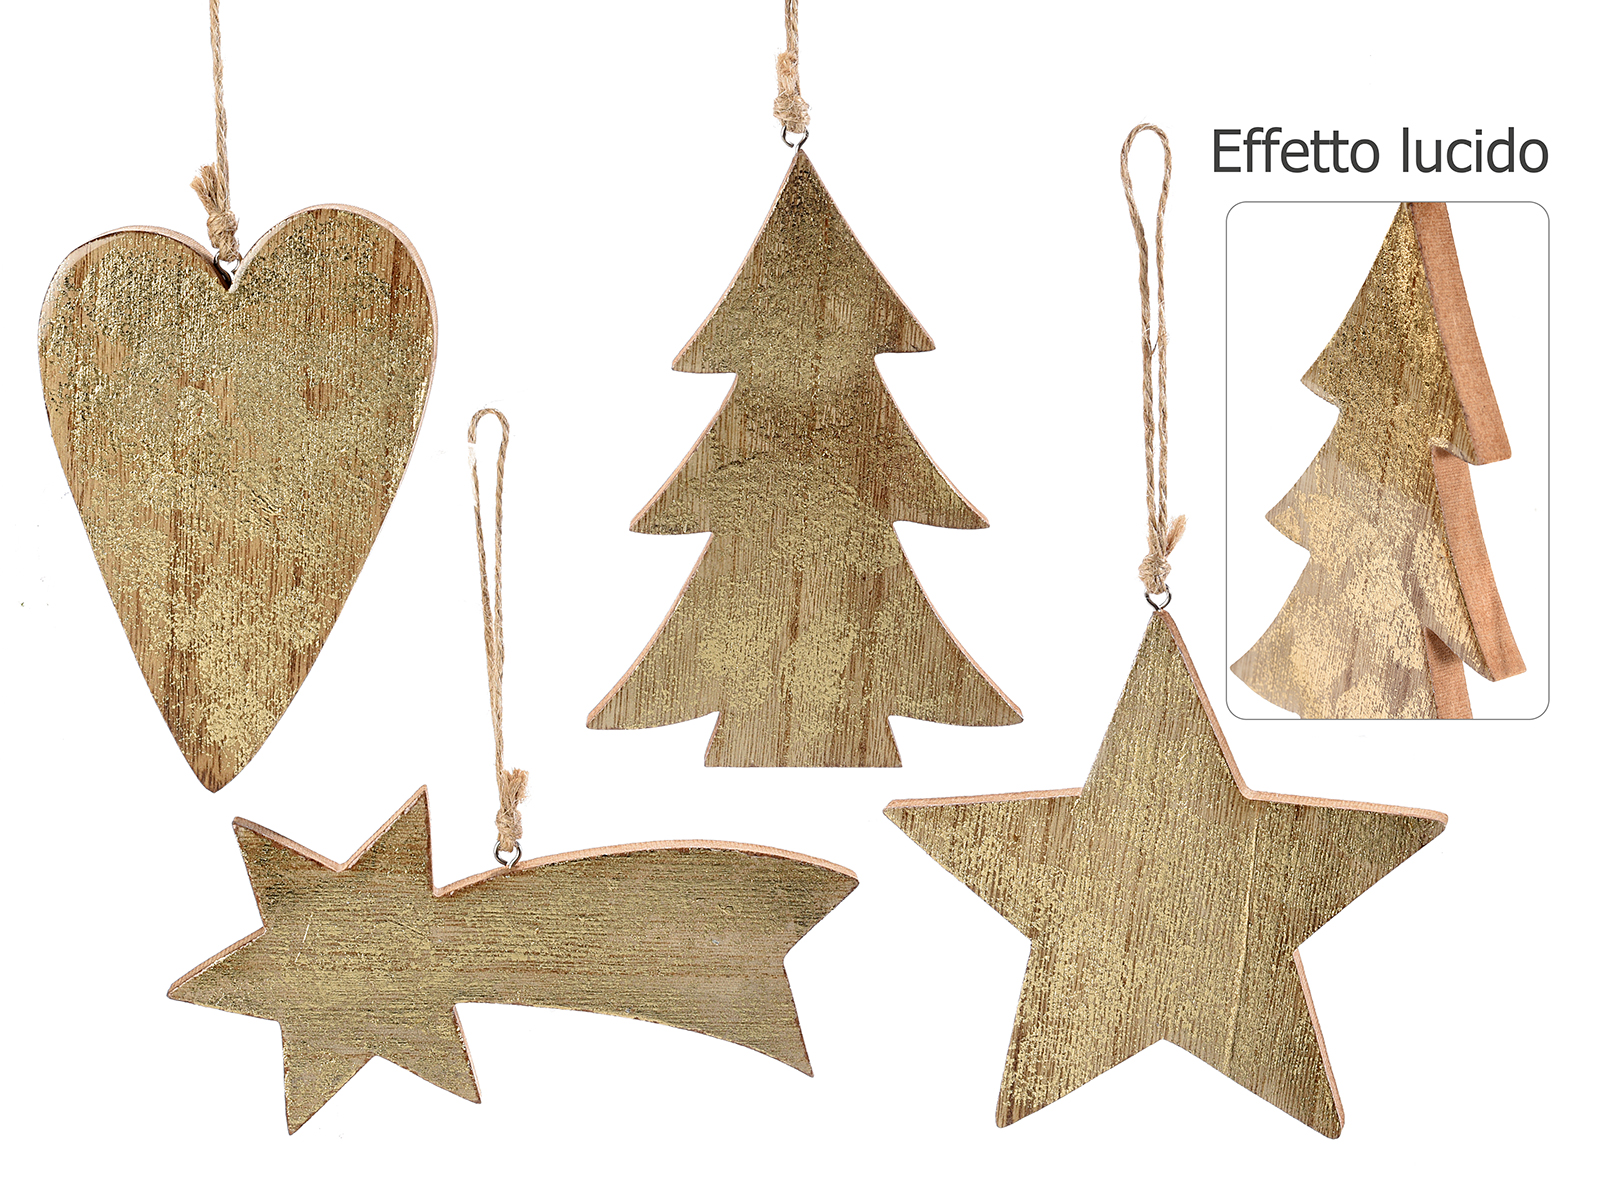 Decorazione natalizia in legno effetto lucido da appendere (51.46.38) - Art  From Italy